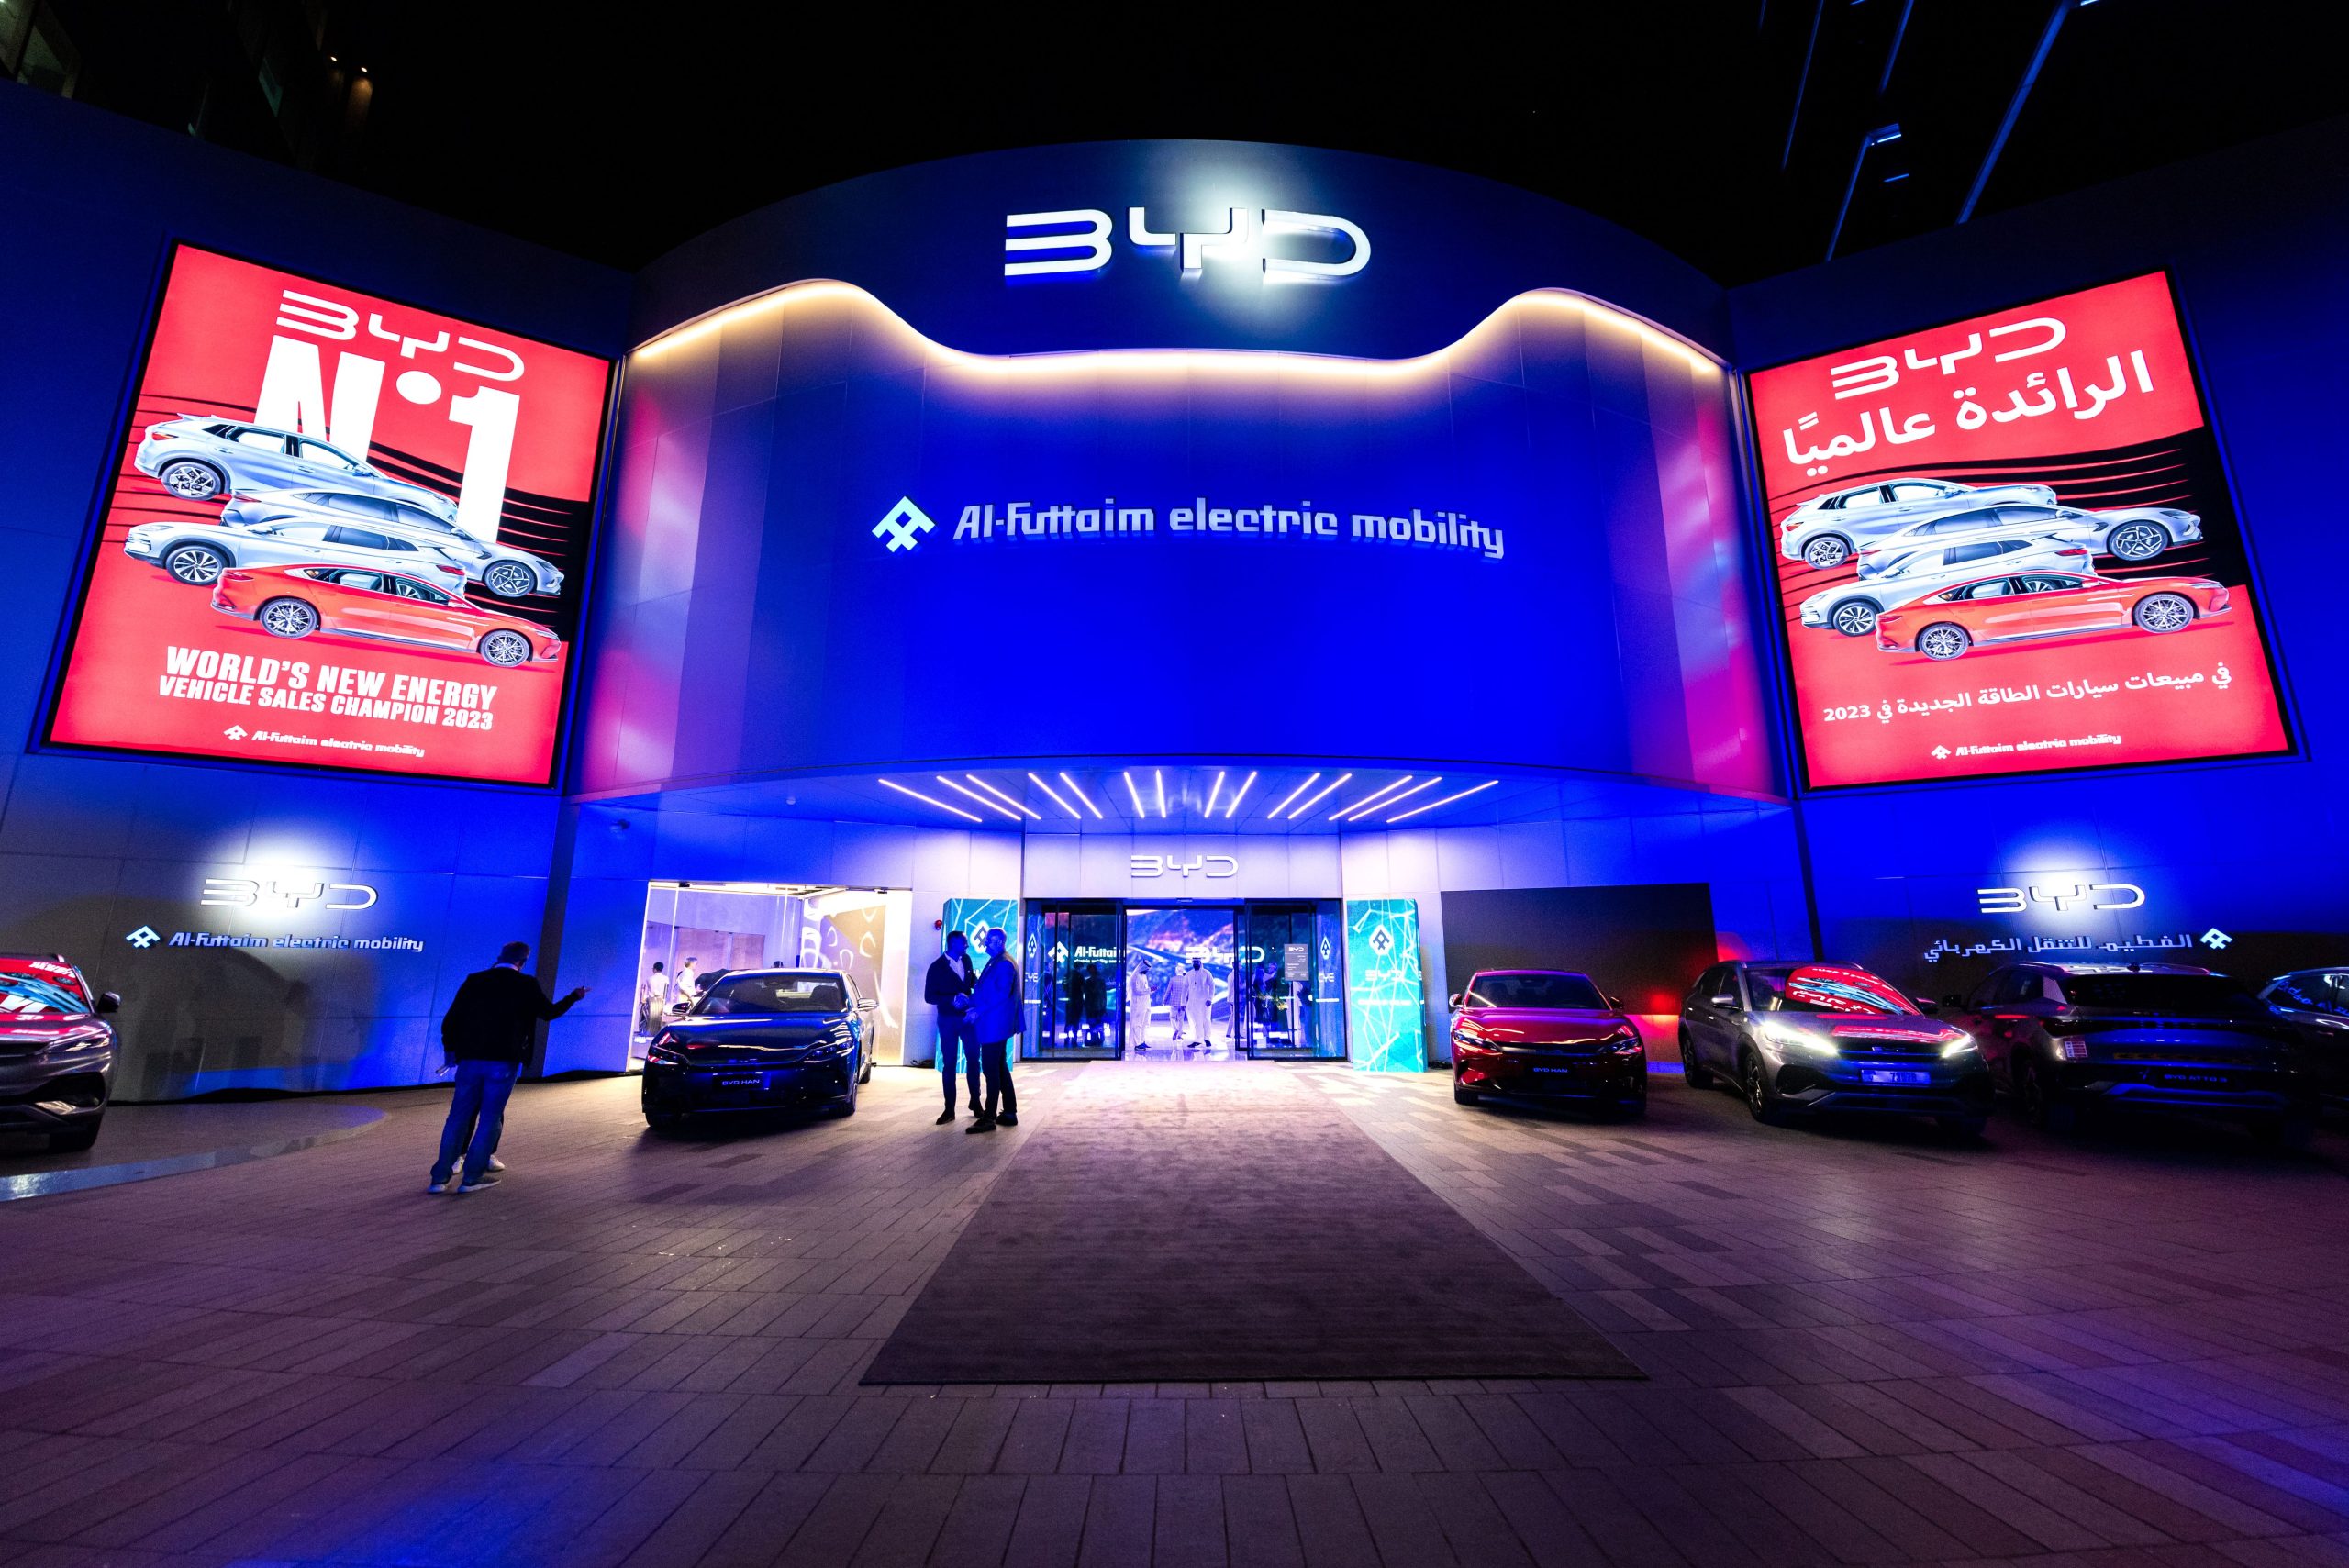 دعماً للنقل المستدام في الدولة: شركة الفطيم للنقل الكهربائي تطلق ثلاث طرازات (BYD) جديدة في الإمارات العربية المتحدة بما في ذلك السيارات الكهربائية بالكامل والسيارات الهجينة القابلة للشحن